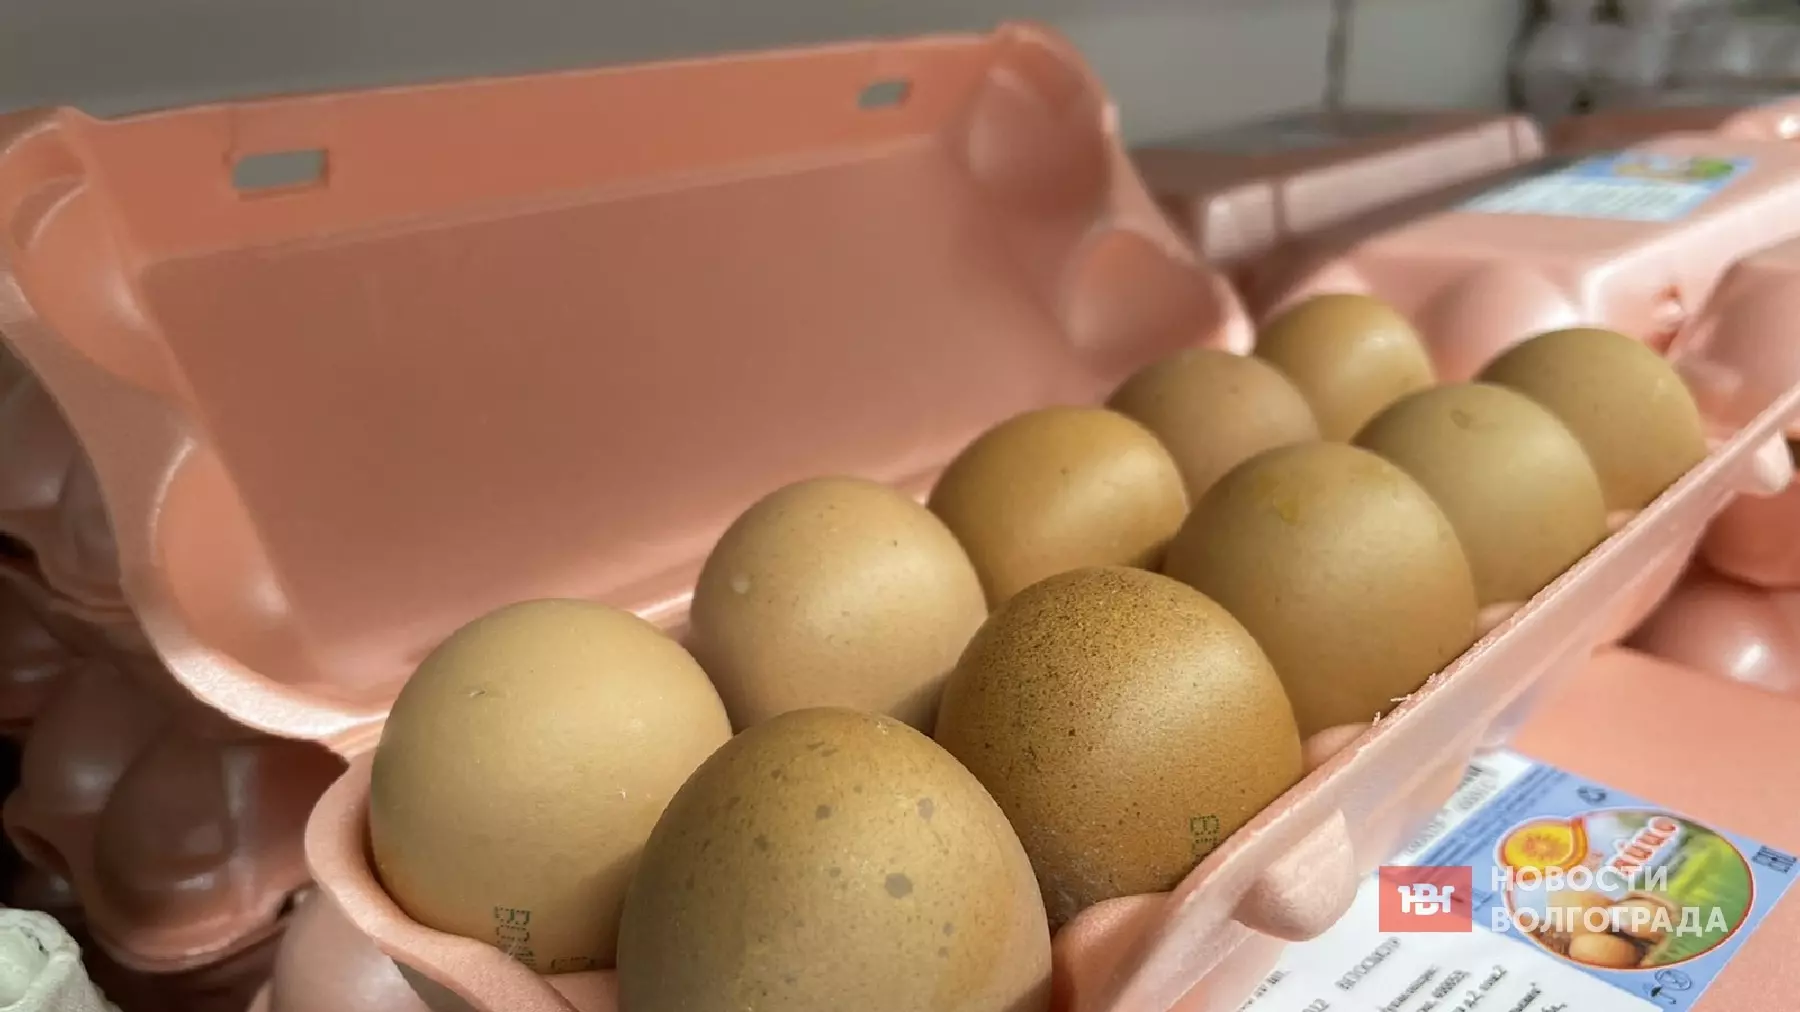 Десяток яиц стоит уже 90 рублей в Волгограде